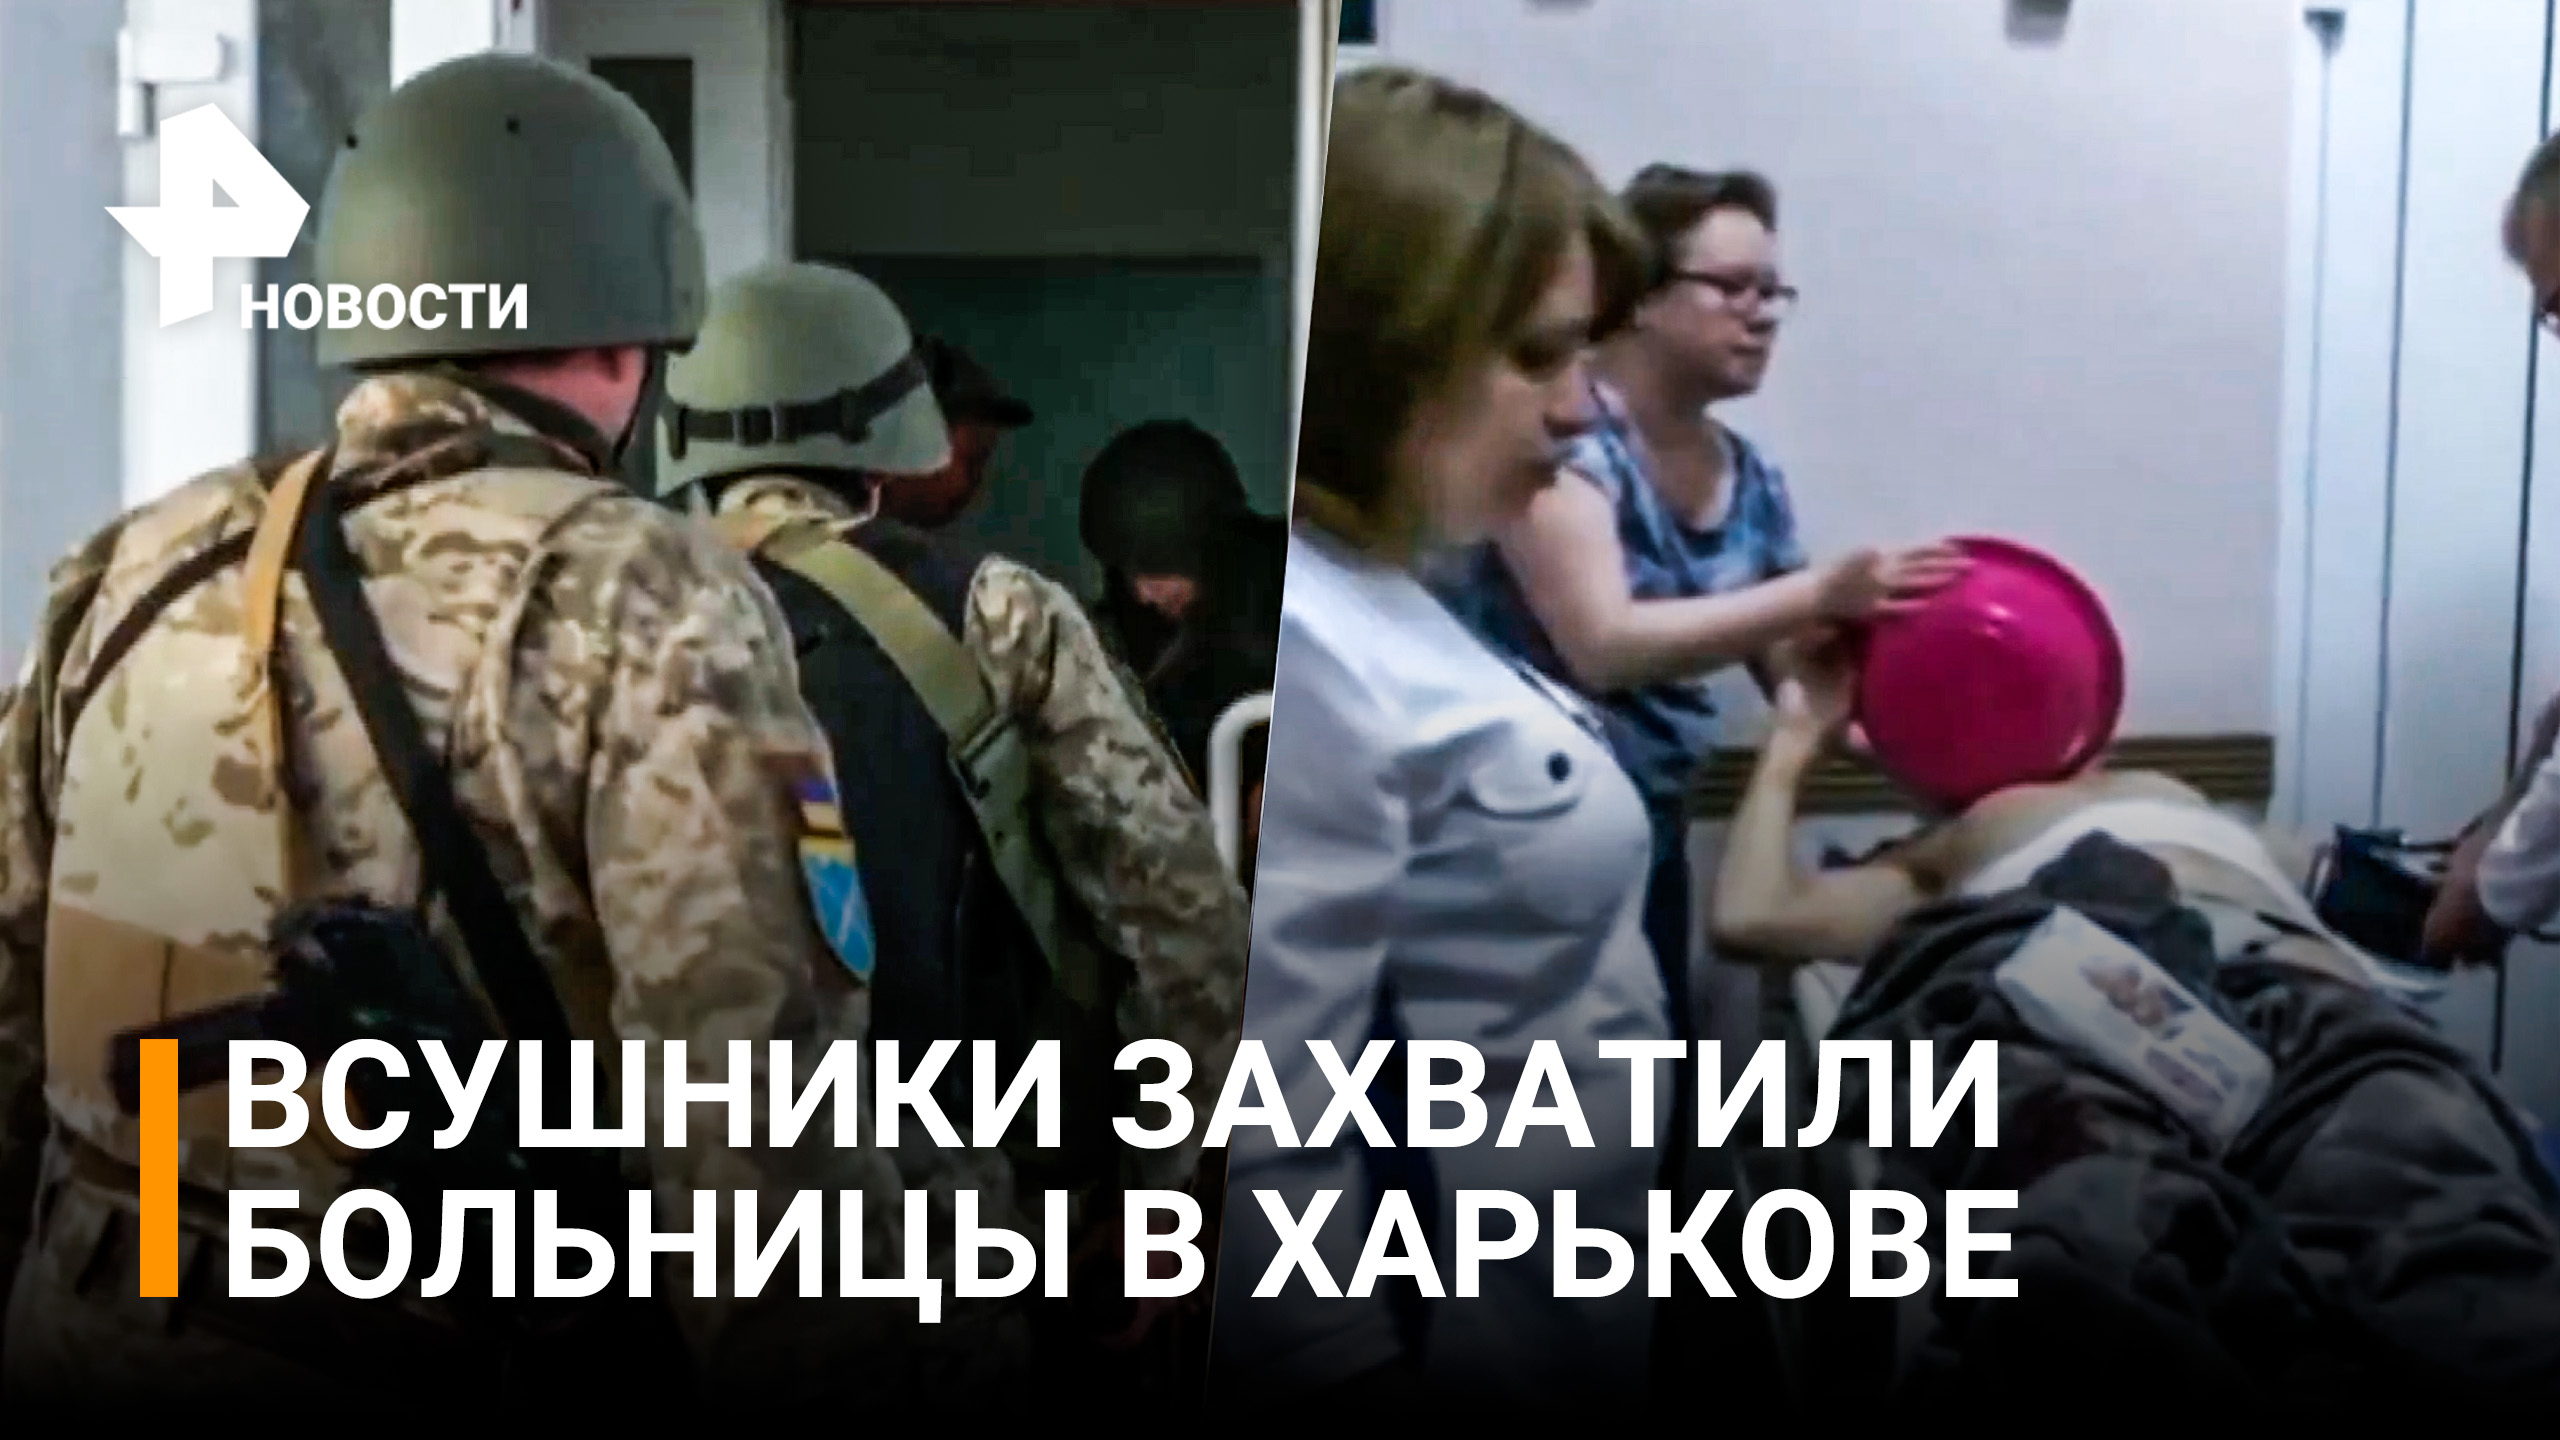 ВСУ захватили больницы в Харькове, где насильно удерживают персонал и пациентов / РЕН Новости